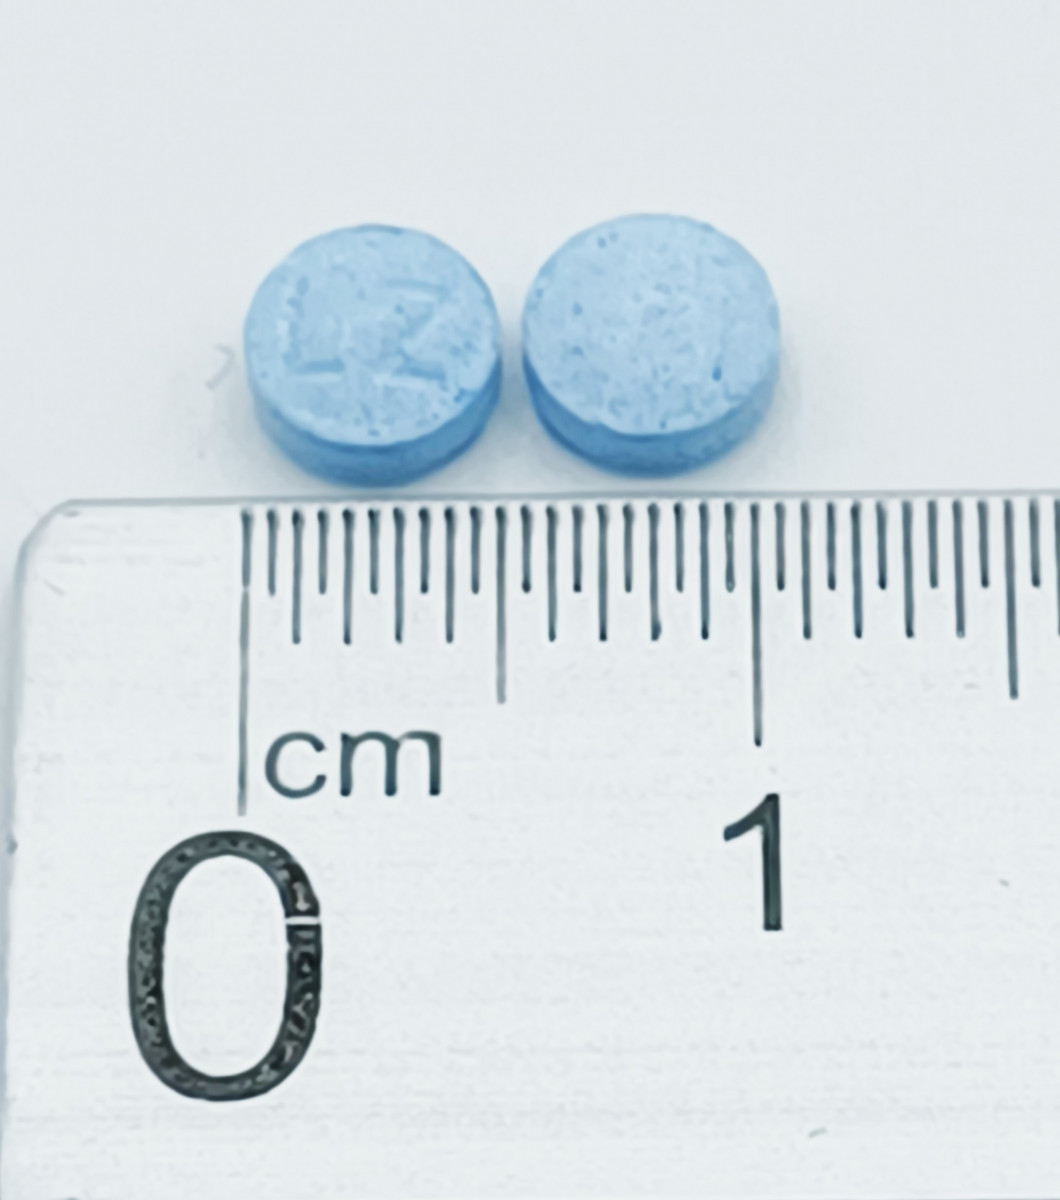 LORAZEPAM NORMON 0,5 MG COMPRIMIDOS EFG, 50 comprimidos (Al/PVC/ACLAR) fotografía de la forma farmacéutica.